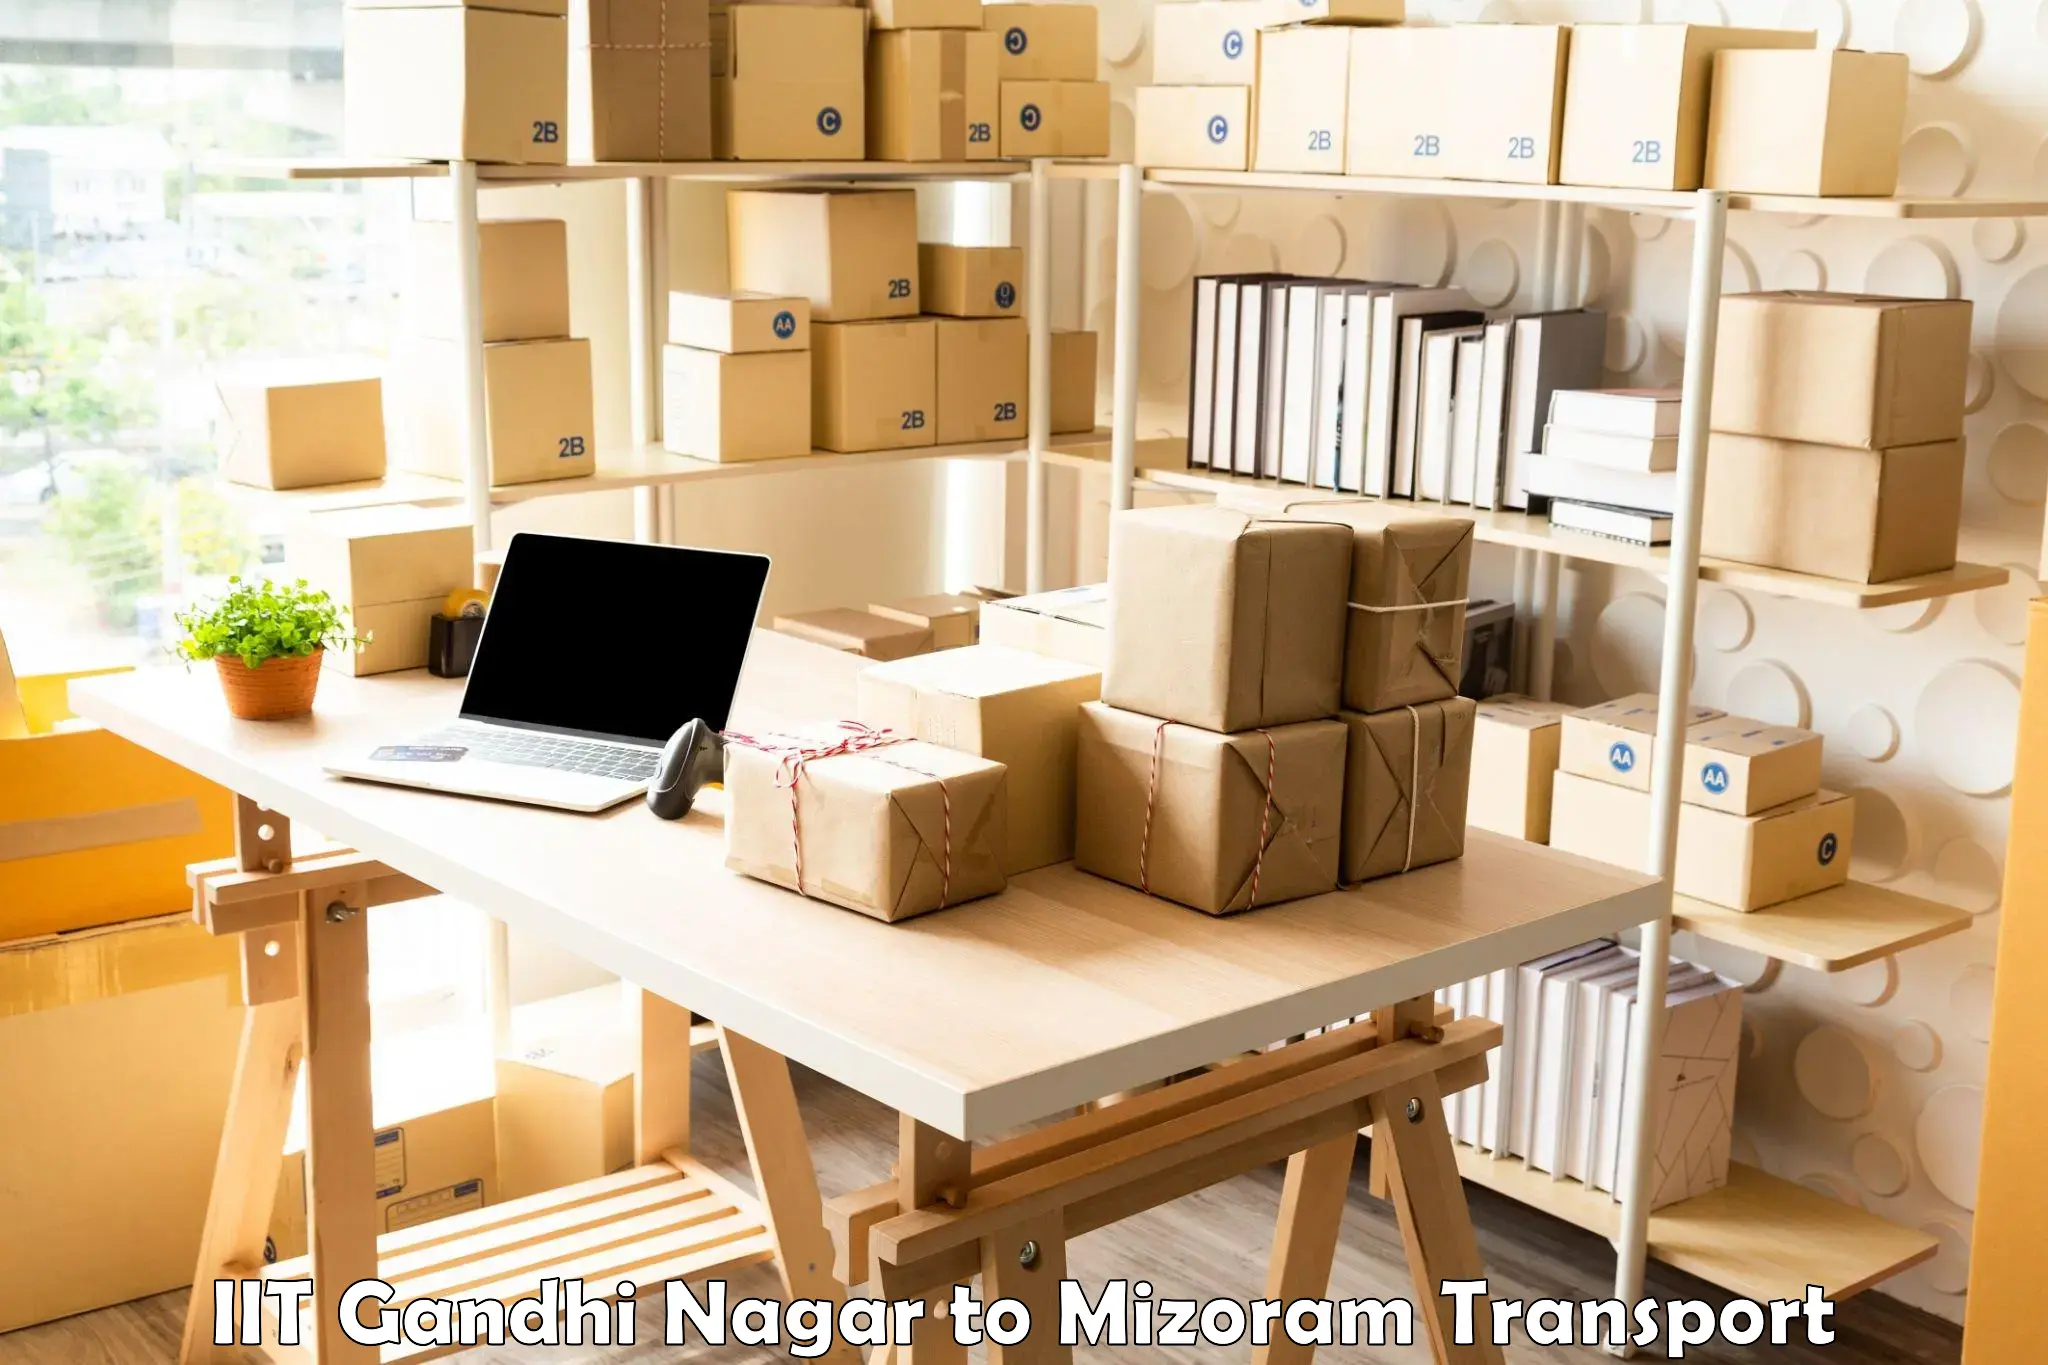 Shipping partner IIT Gandhi Nagar to Thenzawl